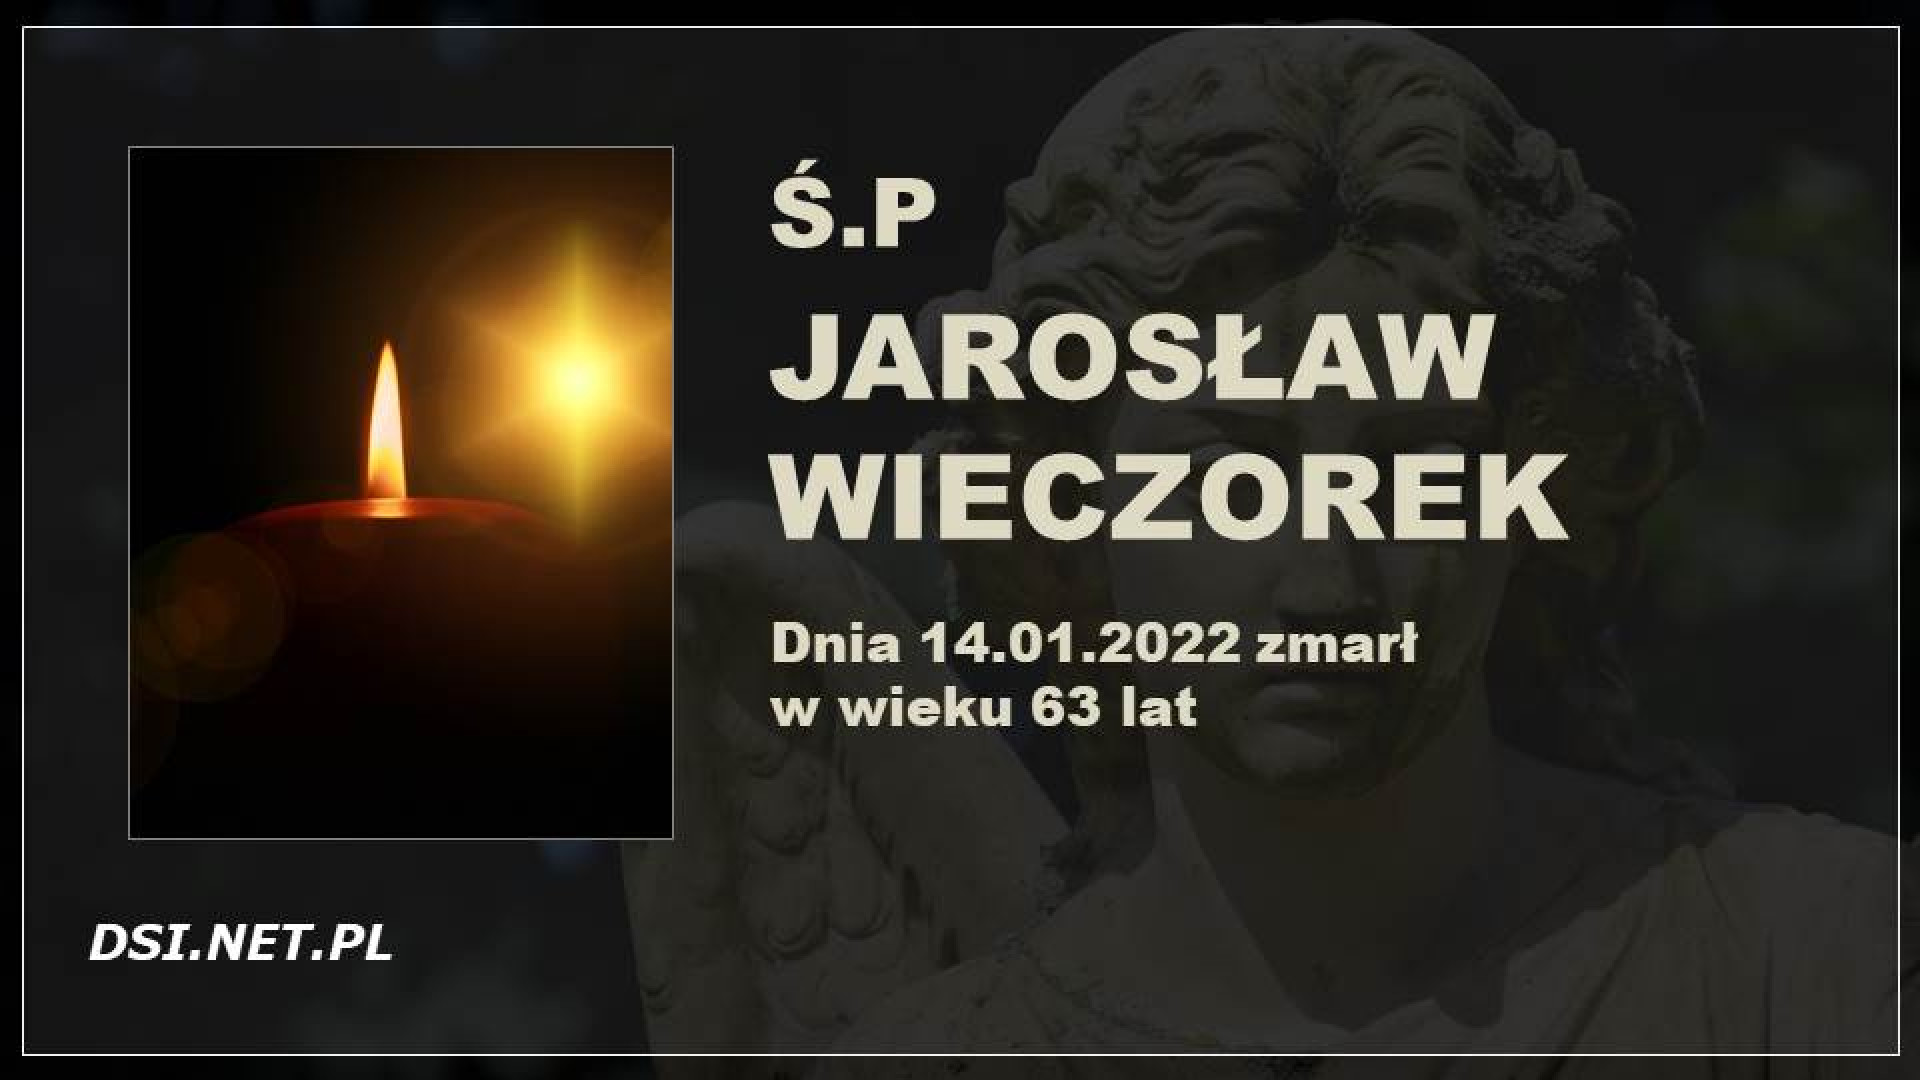 Ś.P. Jarosław Wieczorek